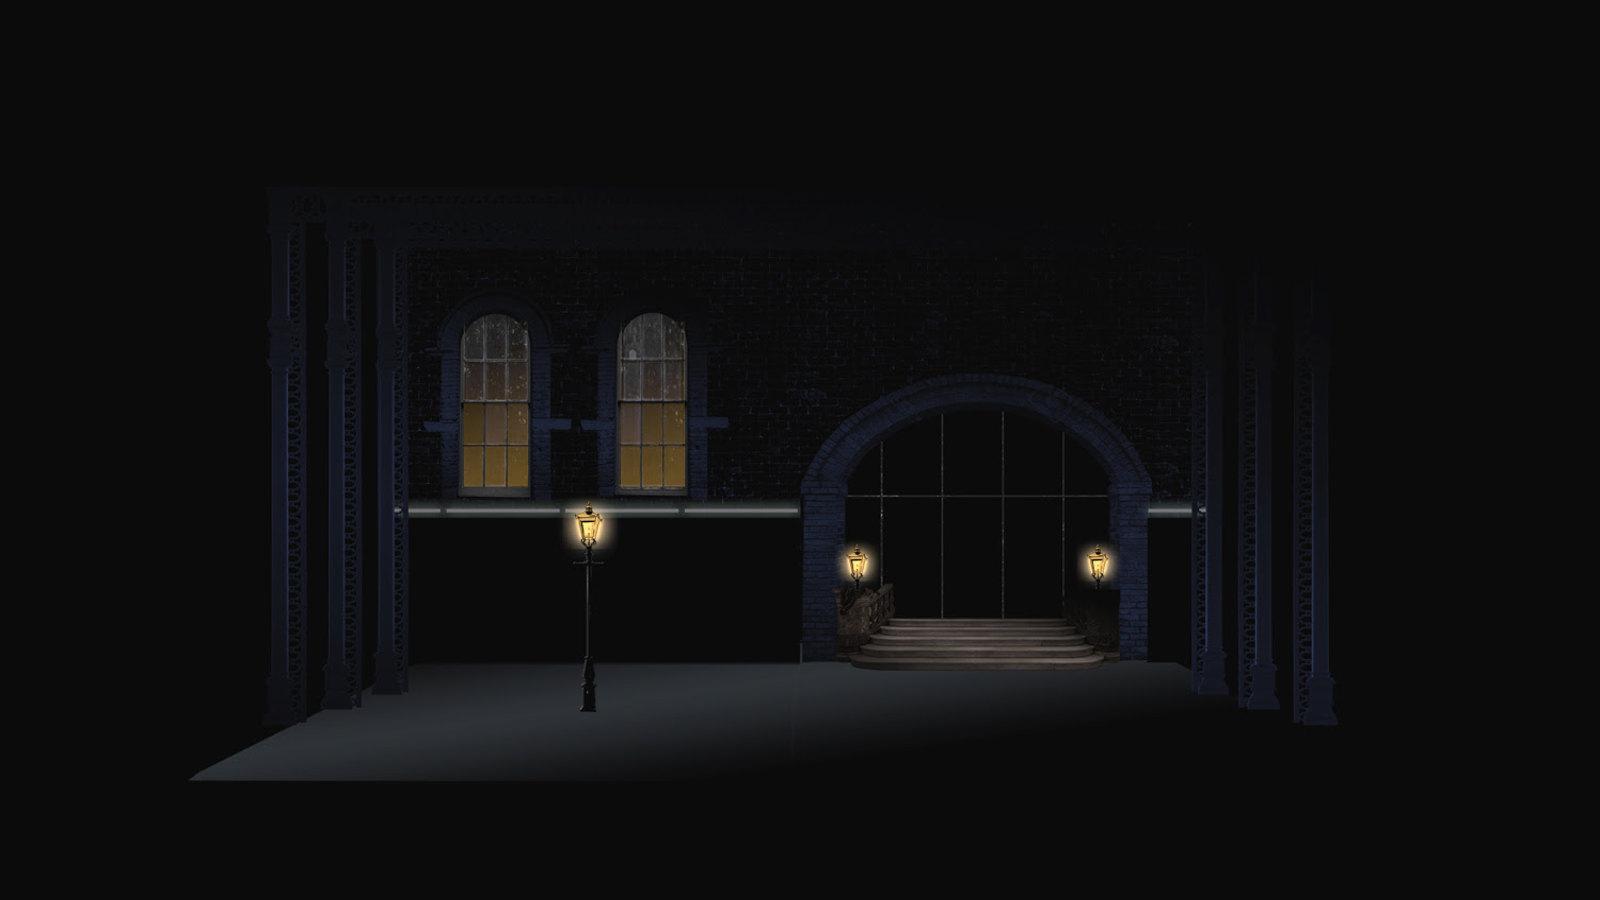 Kuvassa on pimeä katukuva, jossa on talon seinää ja kaksi ikkunaa, josta tulee valoa sekä tunnelimainen käytävä.  Siitä tulee myös valoa.